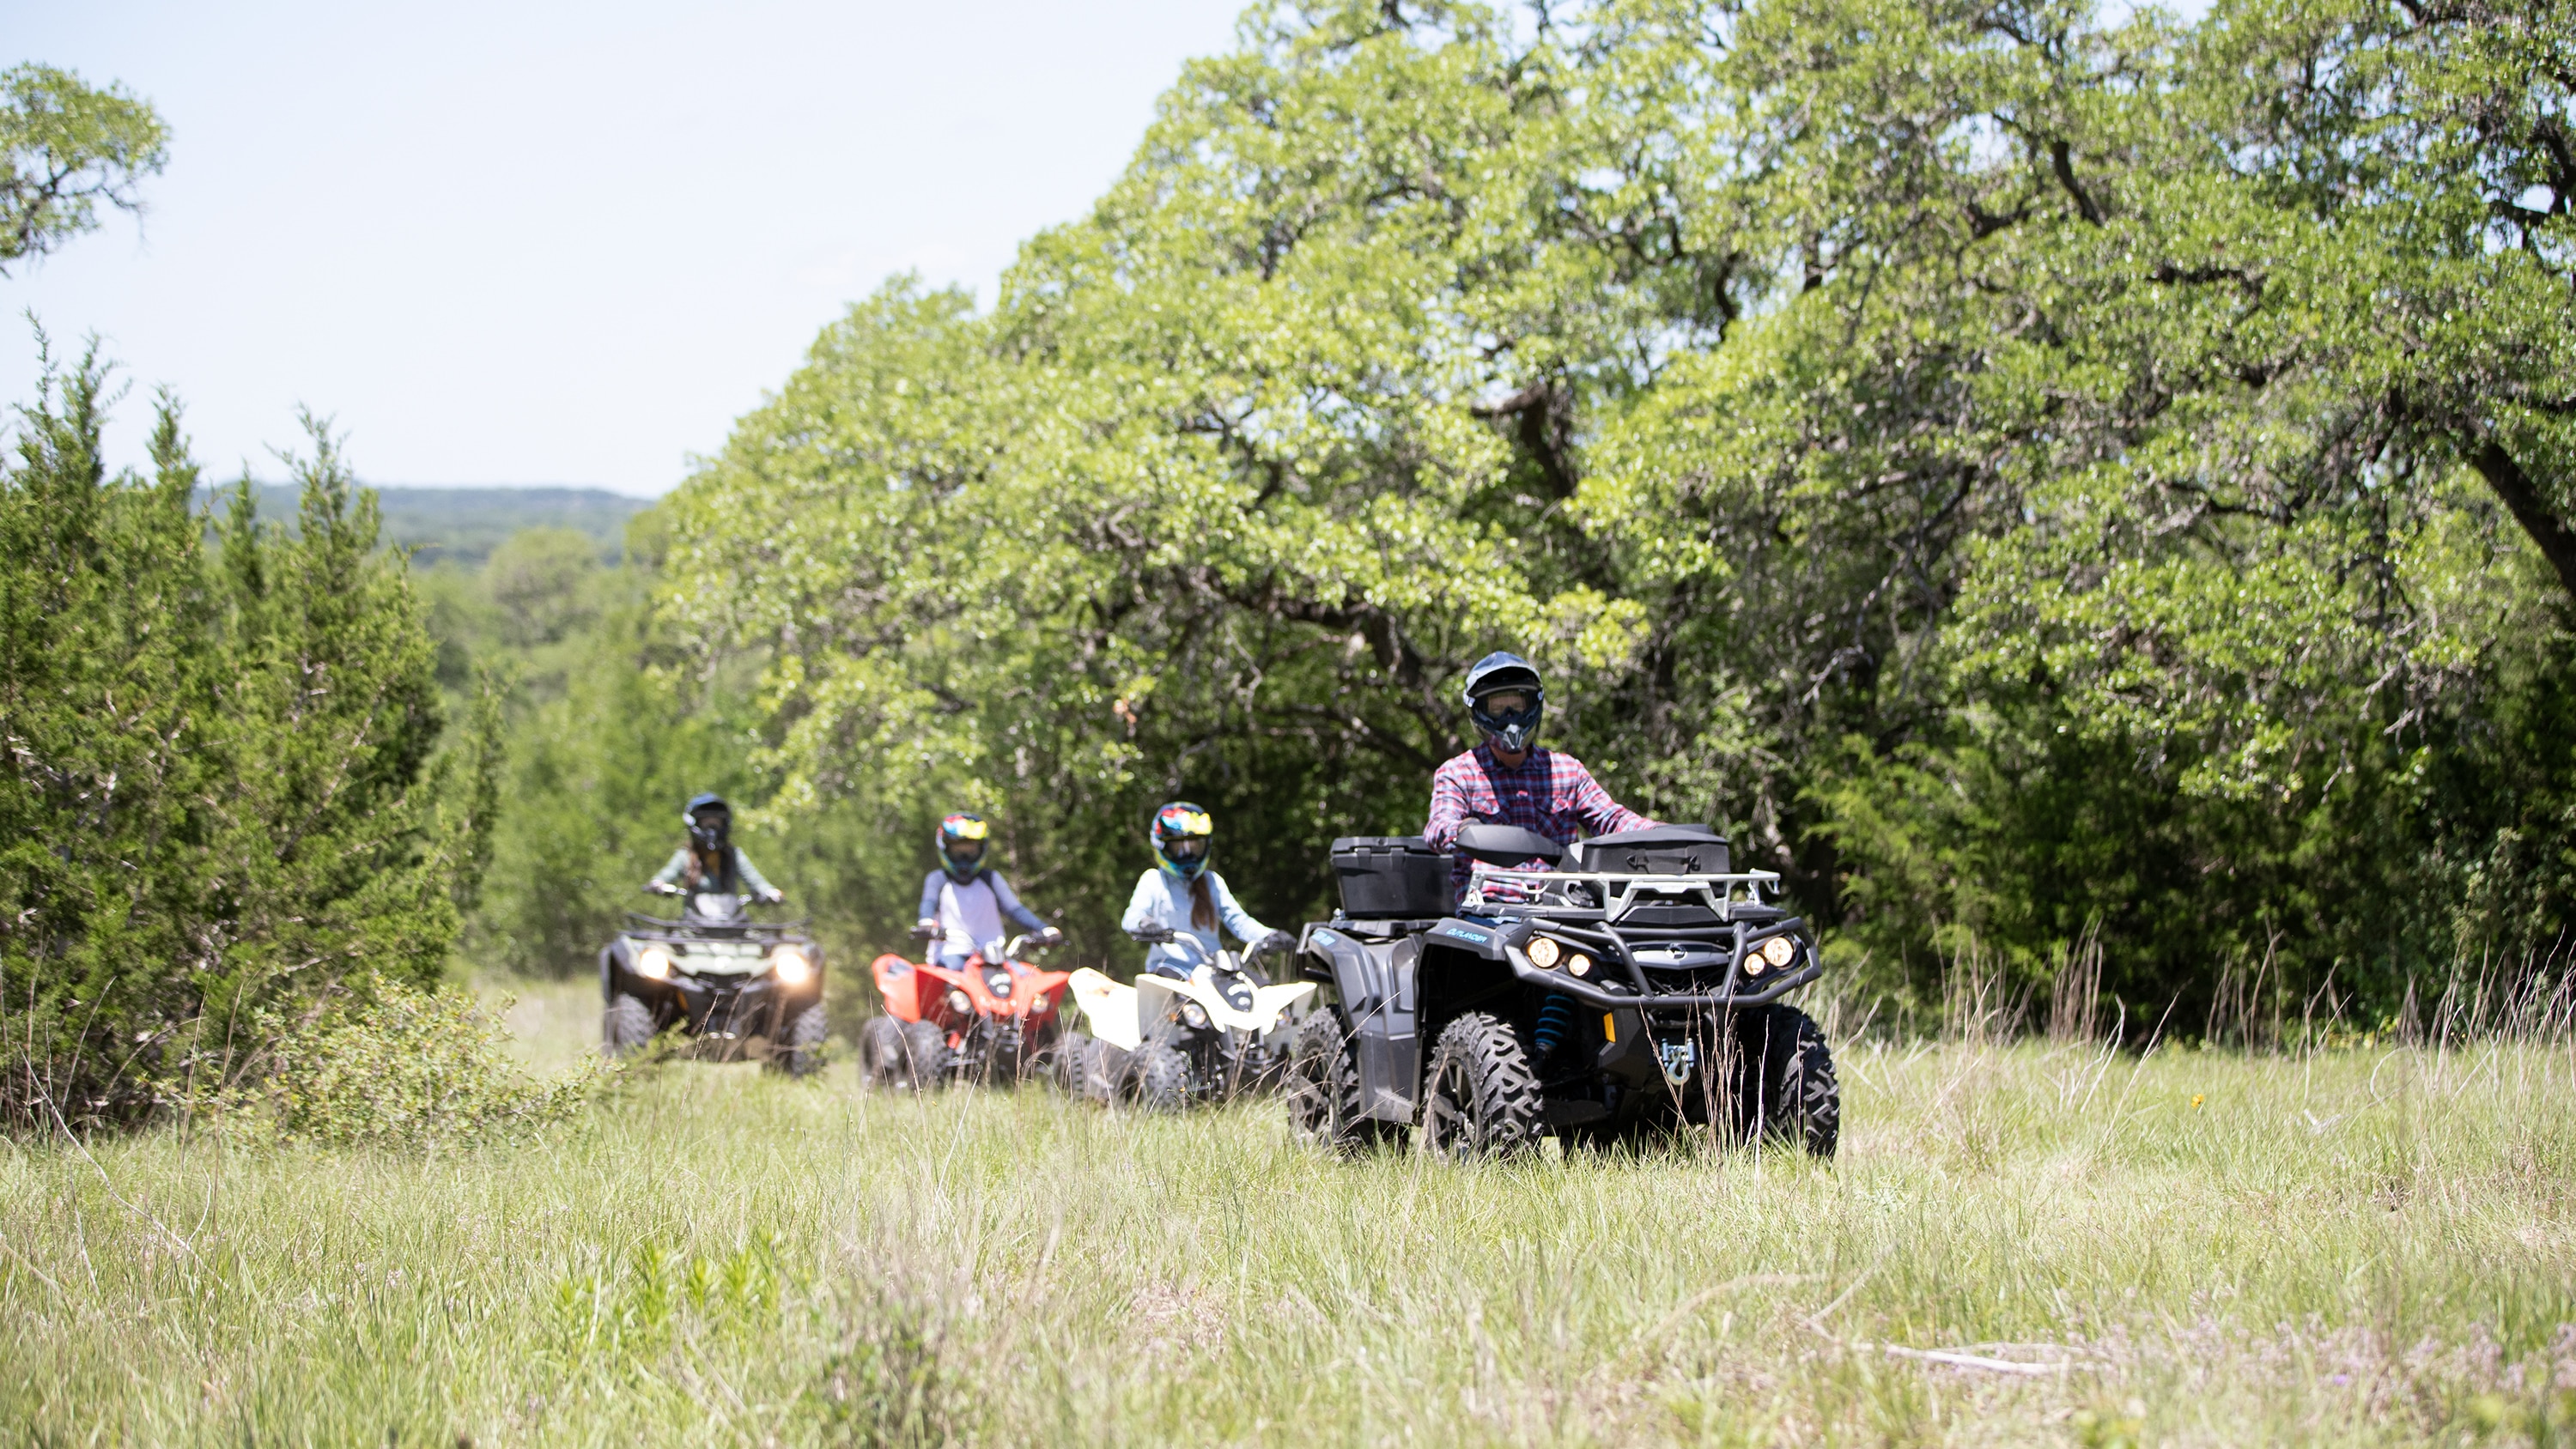  Obitelj koja vozi svoj ATV u šumi